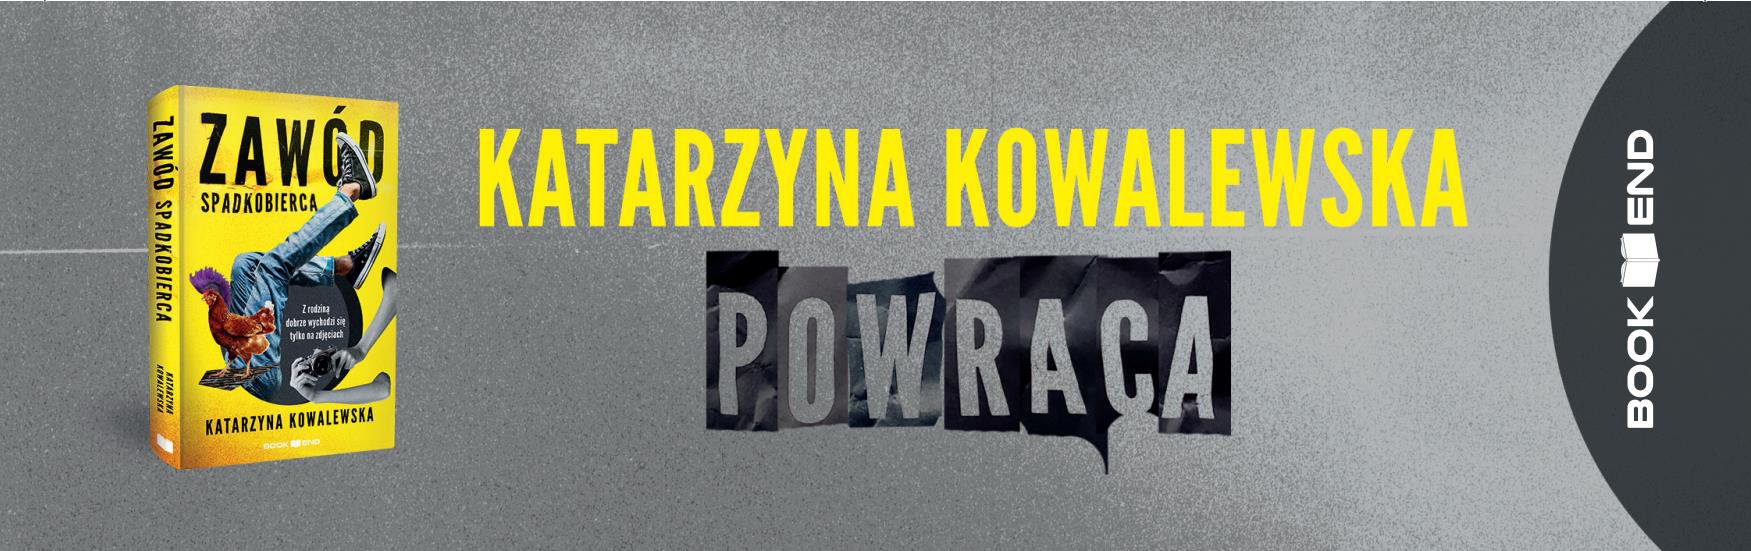 Katarzyna Kowalewska - Zawód spadkobierca